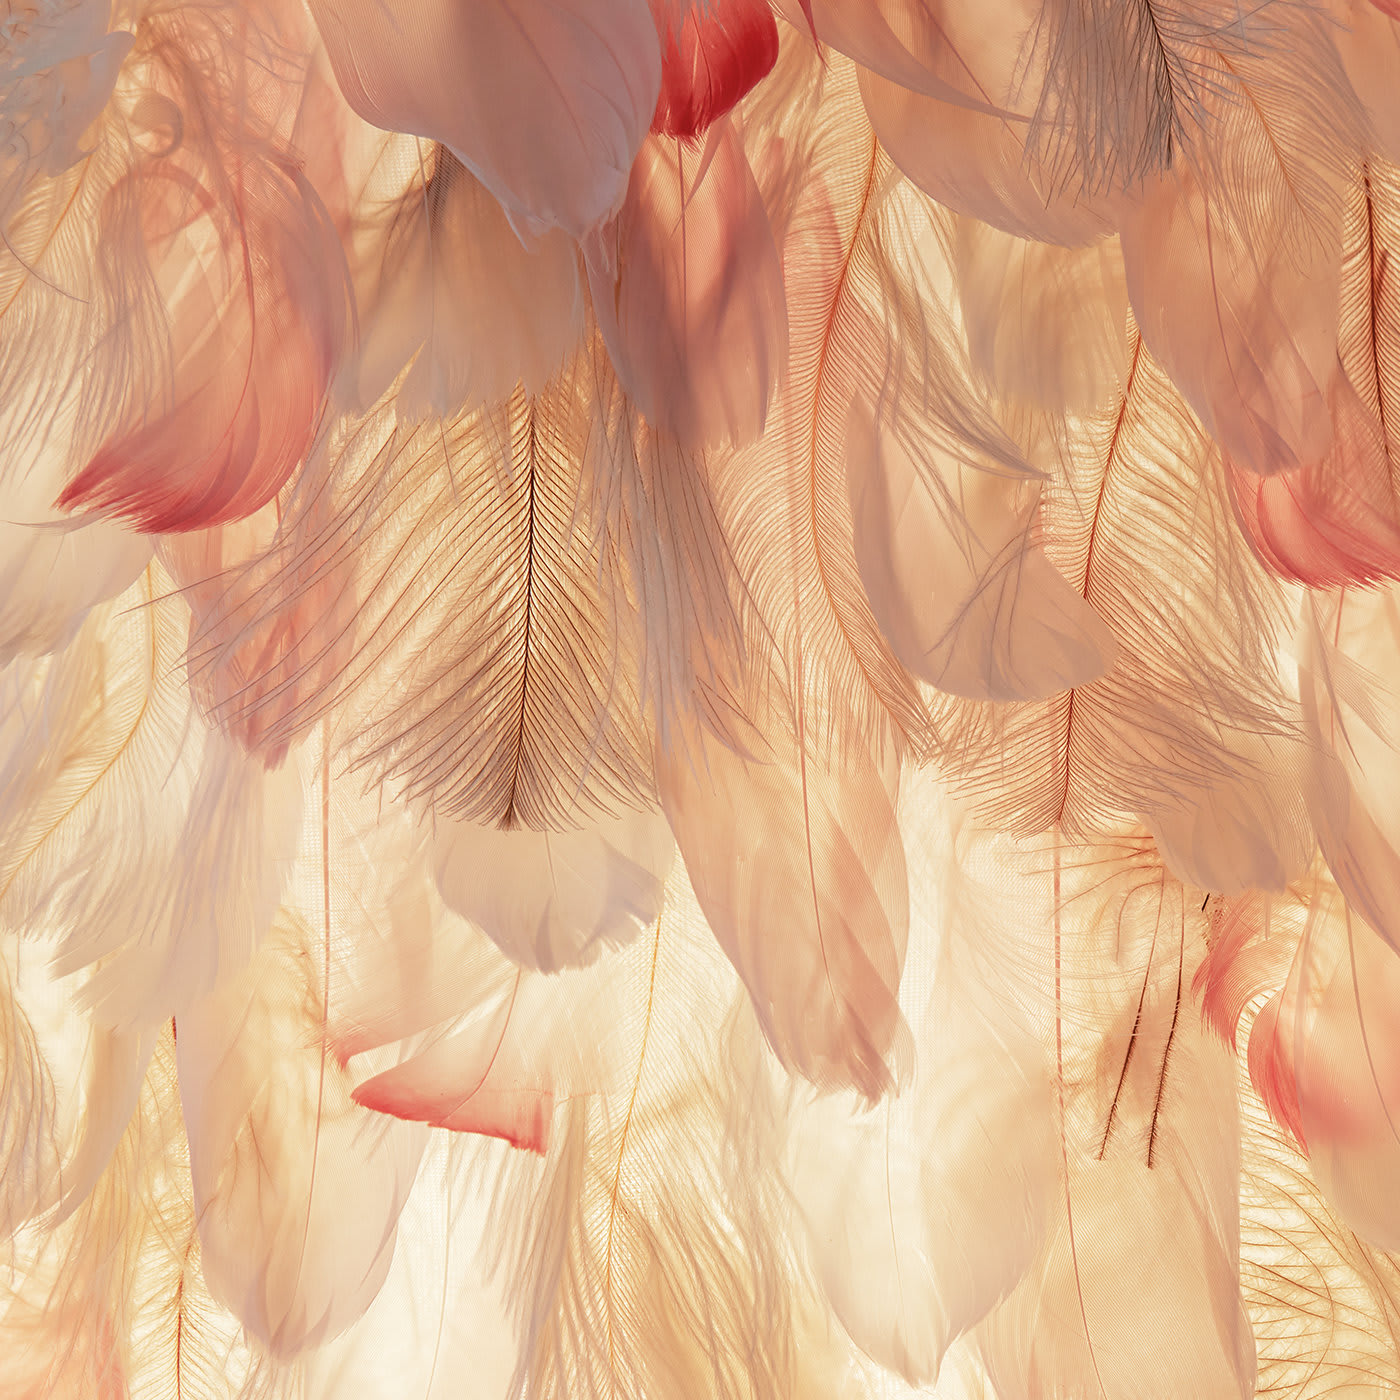 Mara Feathers Lamp - Ilaria Ferraro Toueg